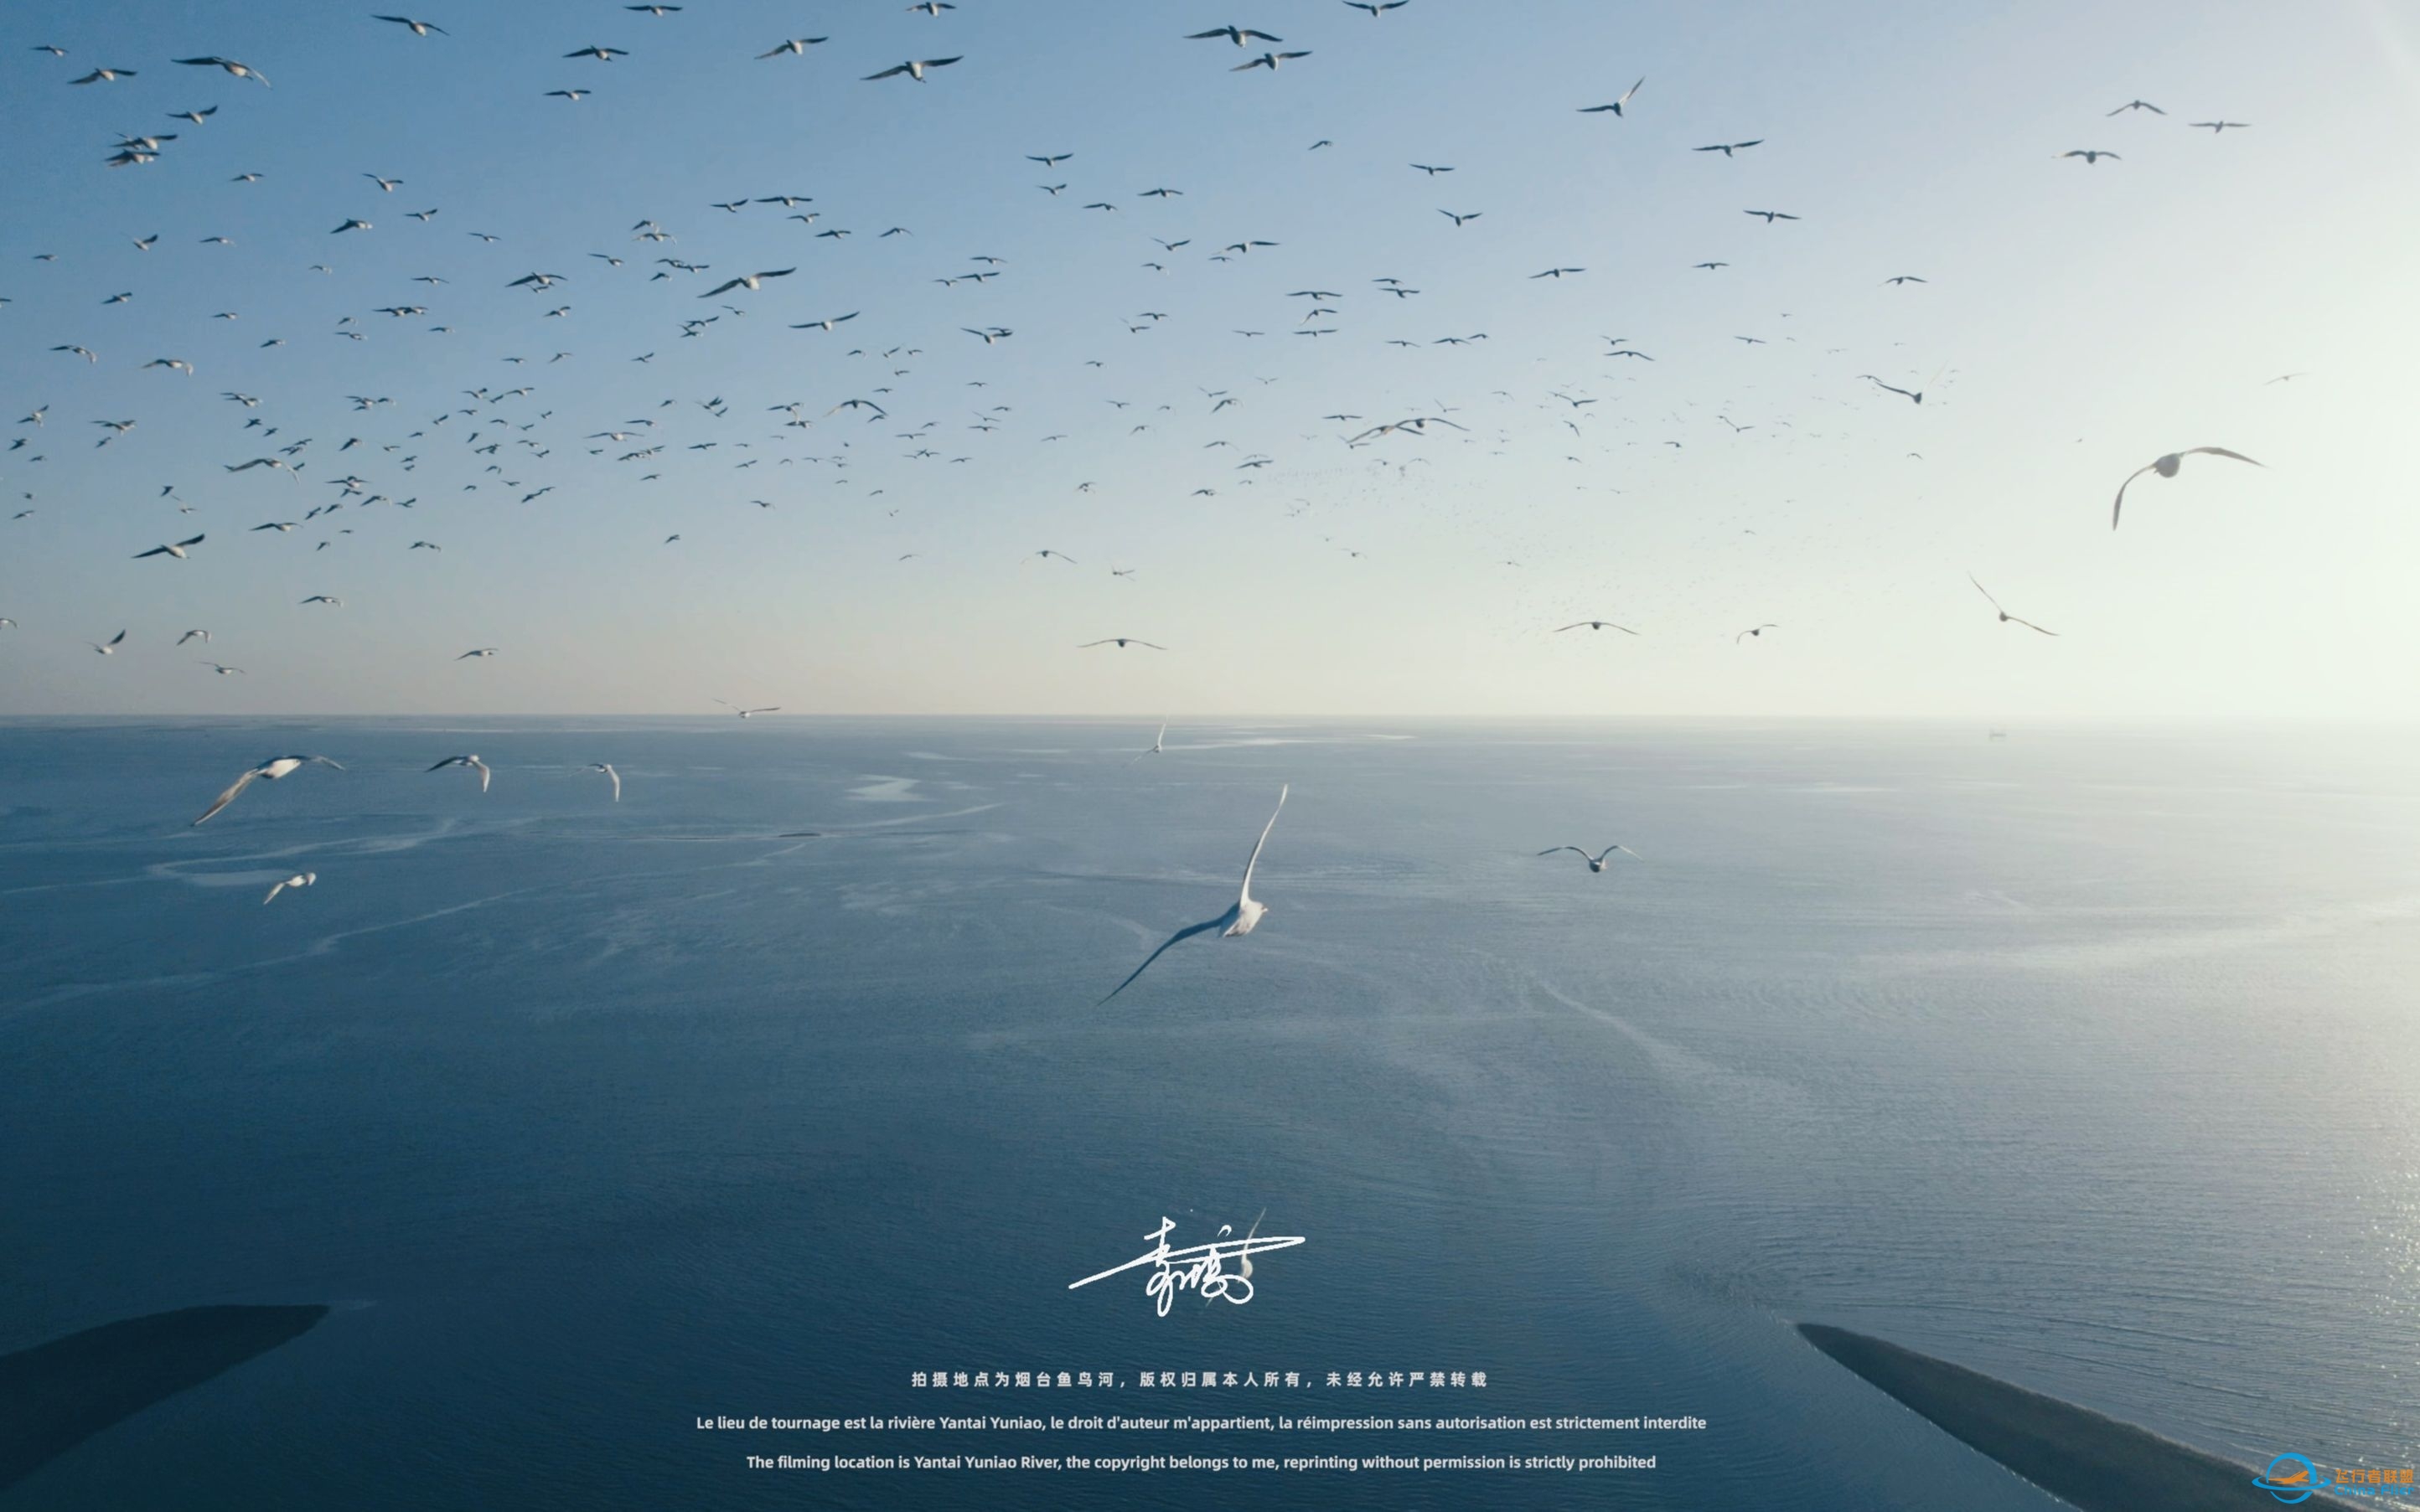 【沉浸式飞行】[DJI AIR 2S]一次跟海鸥一起的沉浸式飞行体验~-2673 